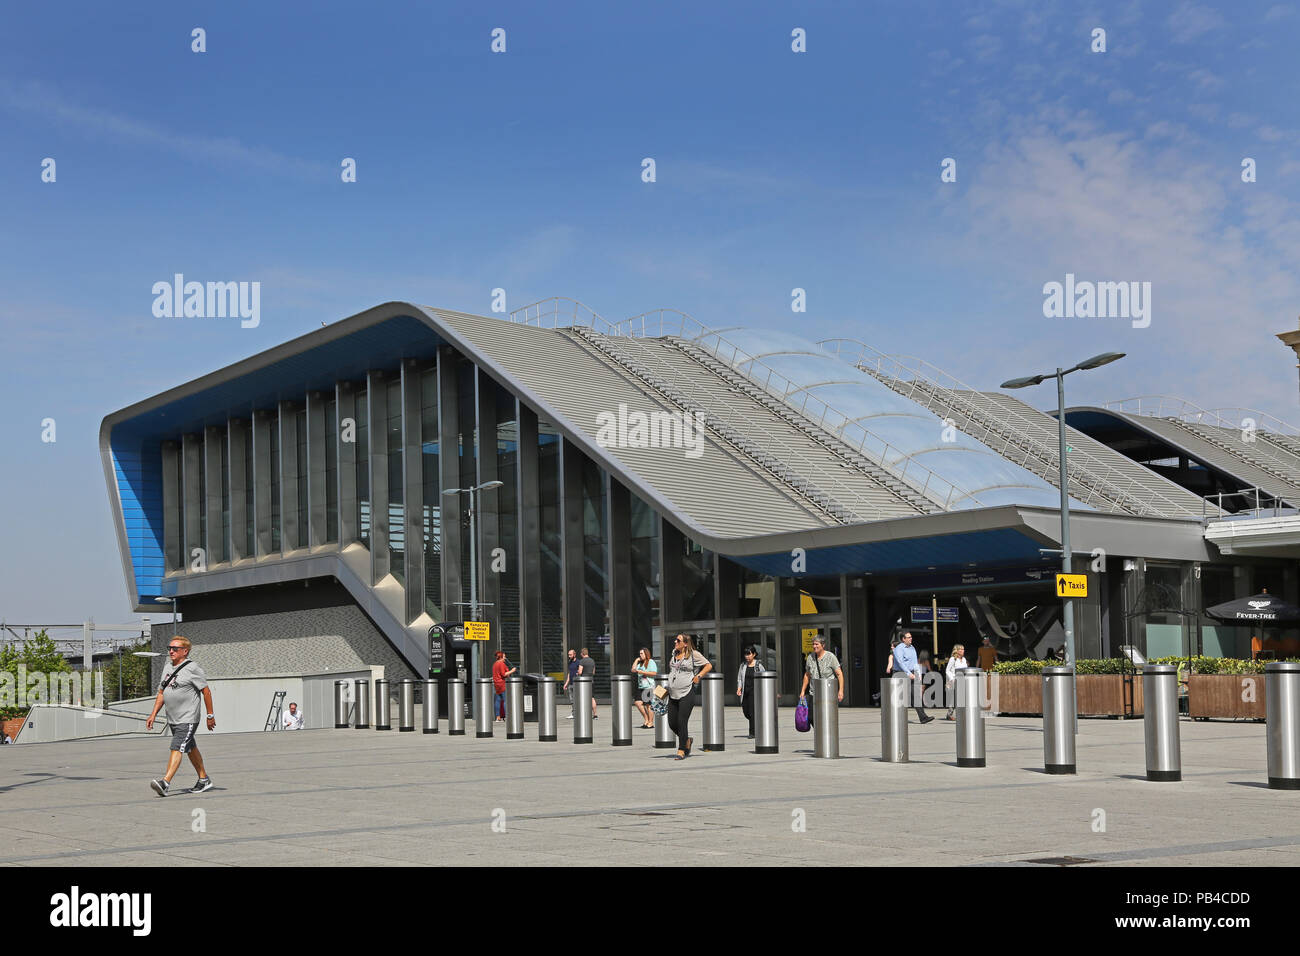 Le nouveau pont d'accès à la plate-forme à la gare de Reading, Berkshire, Royaume-Uni. Côté sud, montre nouvelle zone piétonne plaza et bornes anti-terroriste. Banque D'Images